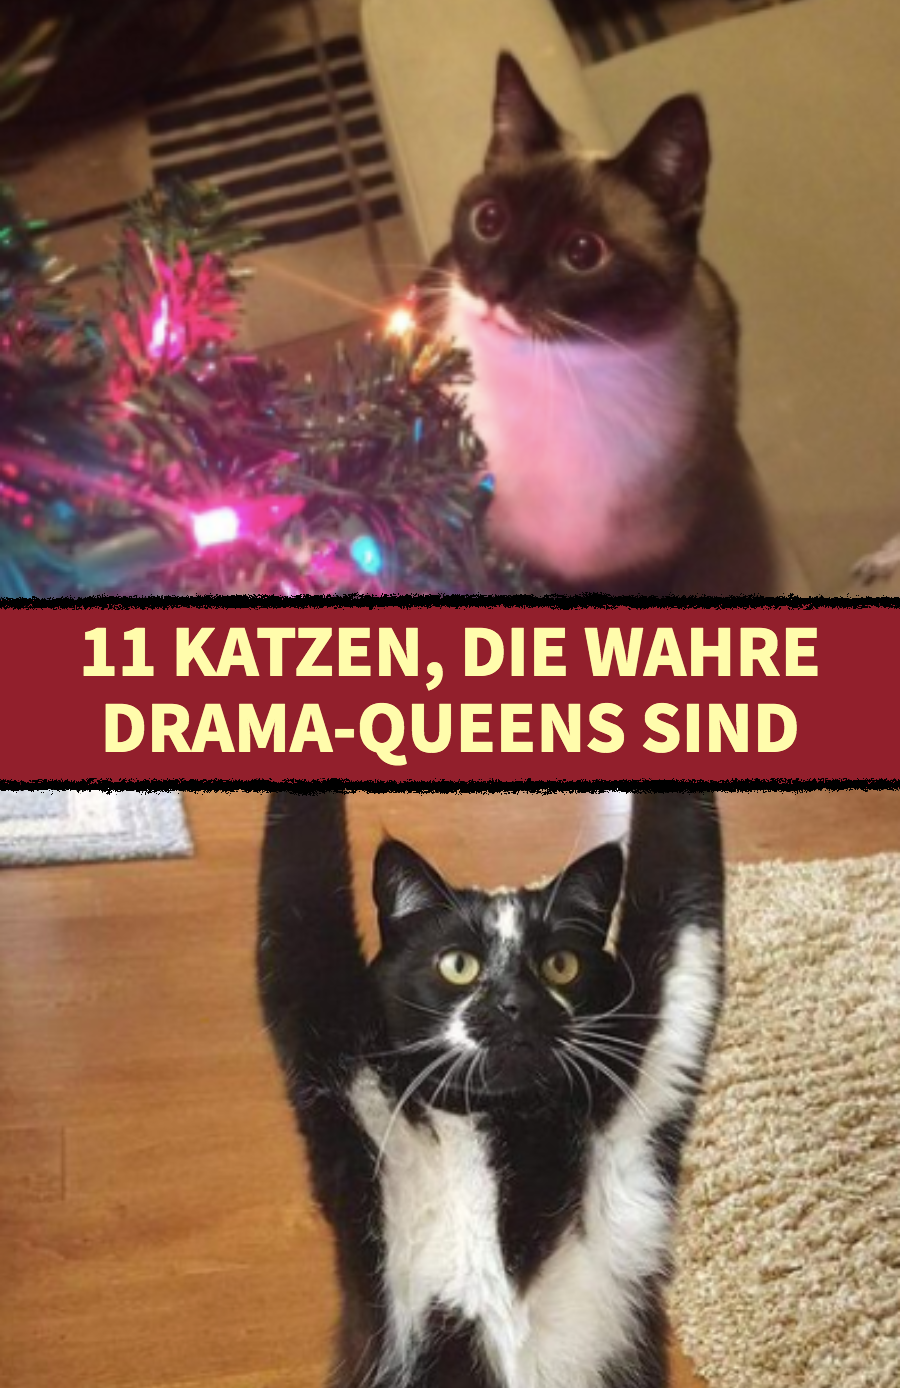 11 Drama-Katzen sind mit der Gesamtsituation unzufrieden